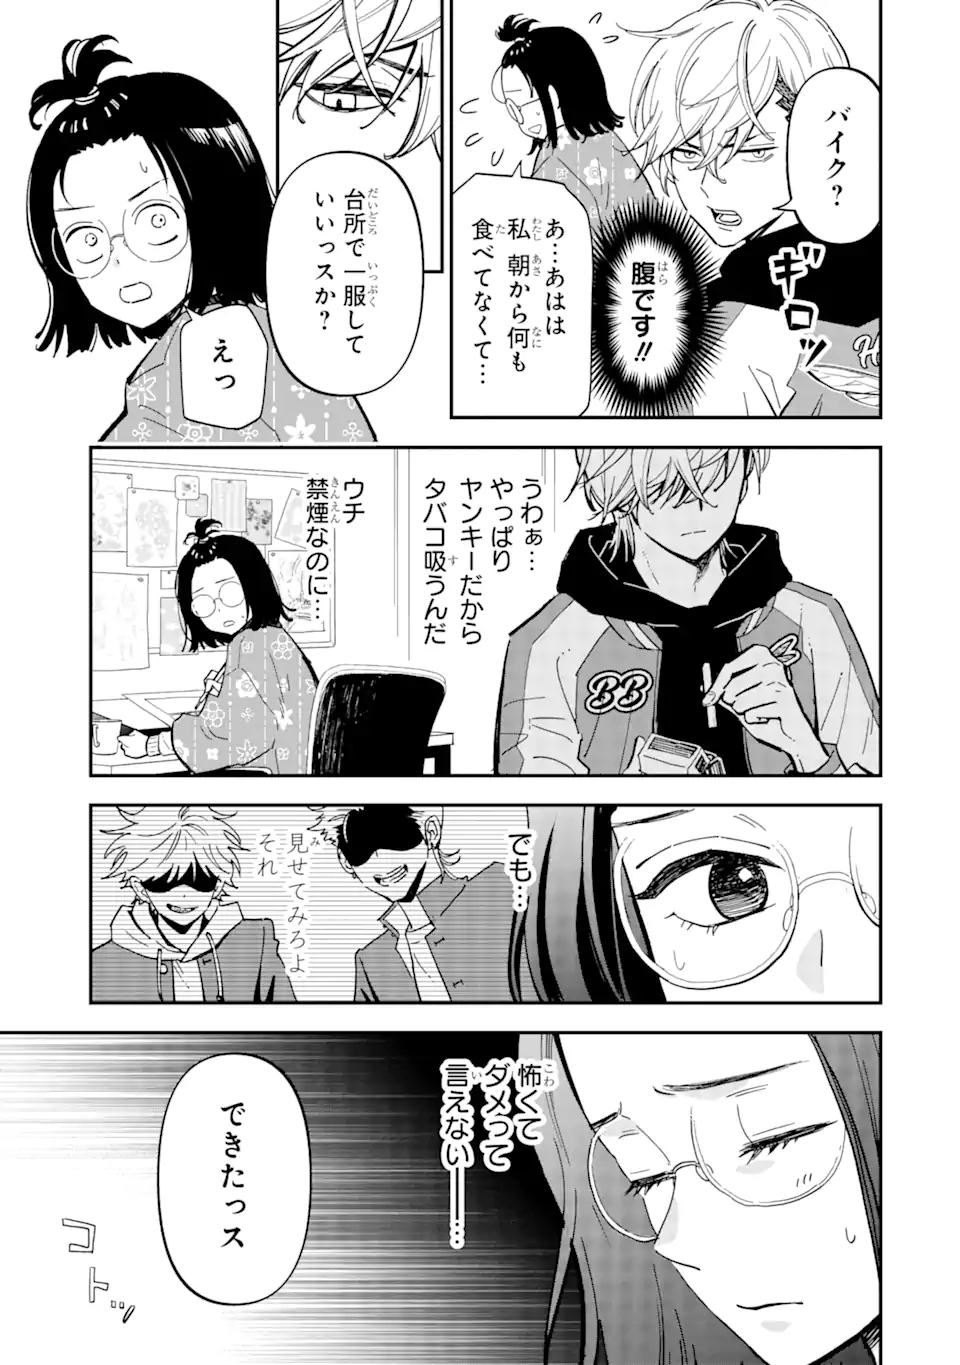 Yankee Assistant no Ashizawa-kun ni Koi wo shita - Chapter 1.1 - Page 7